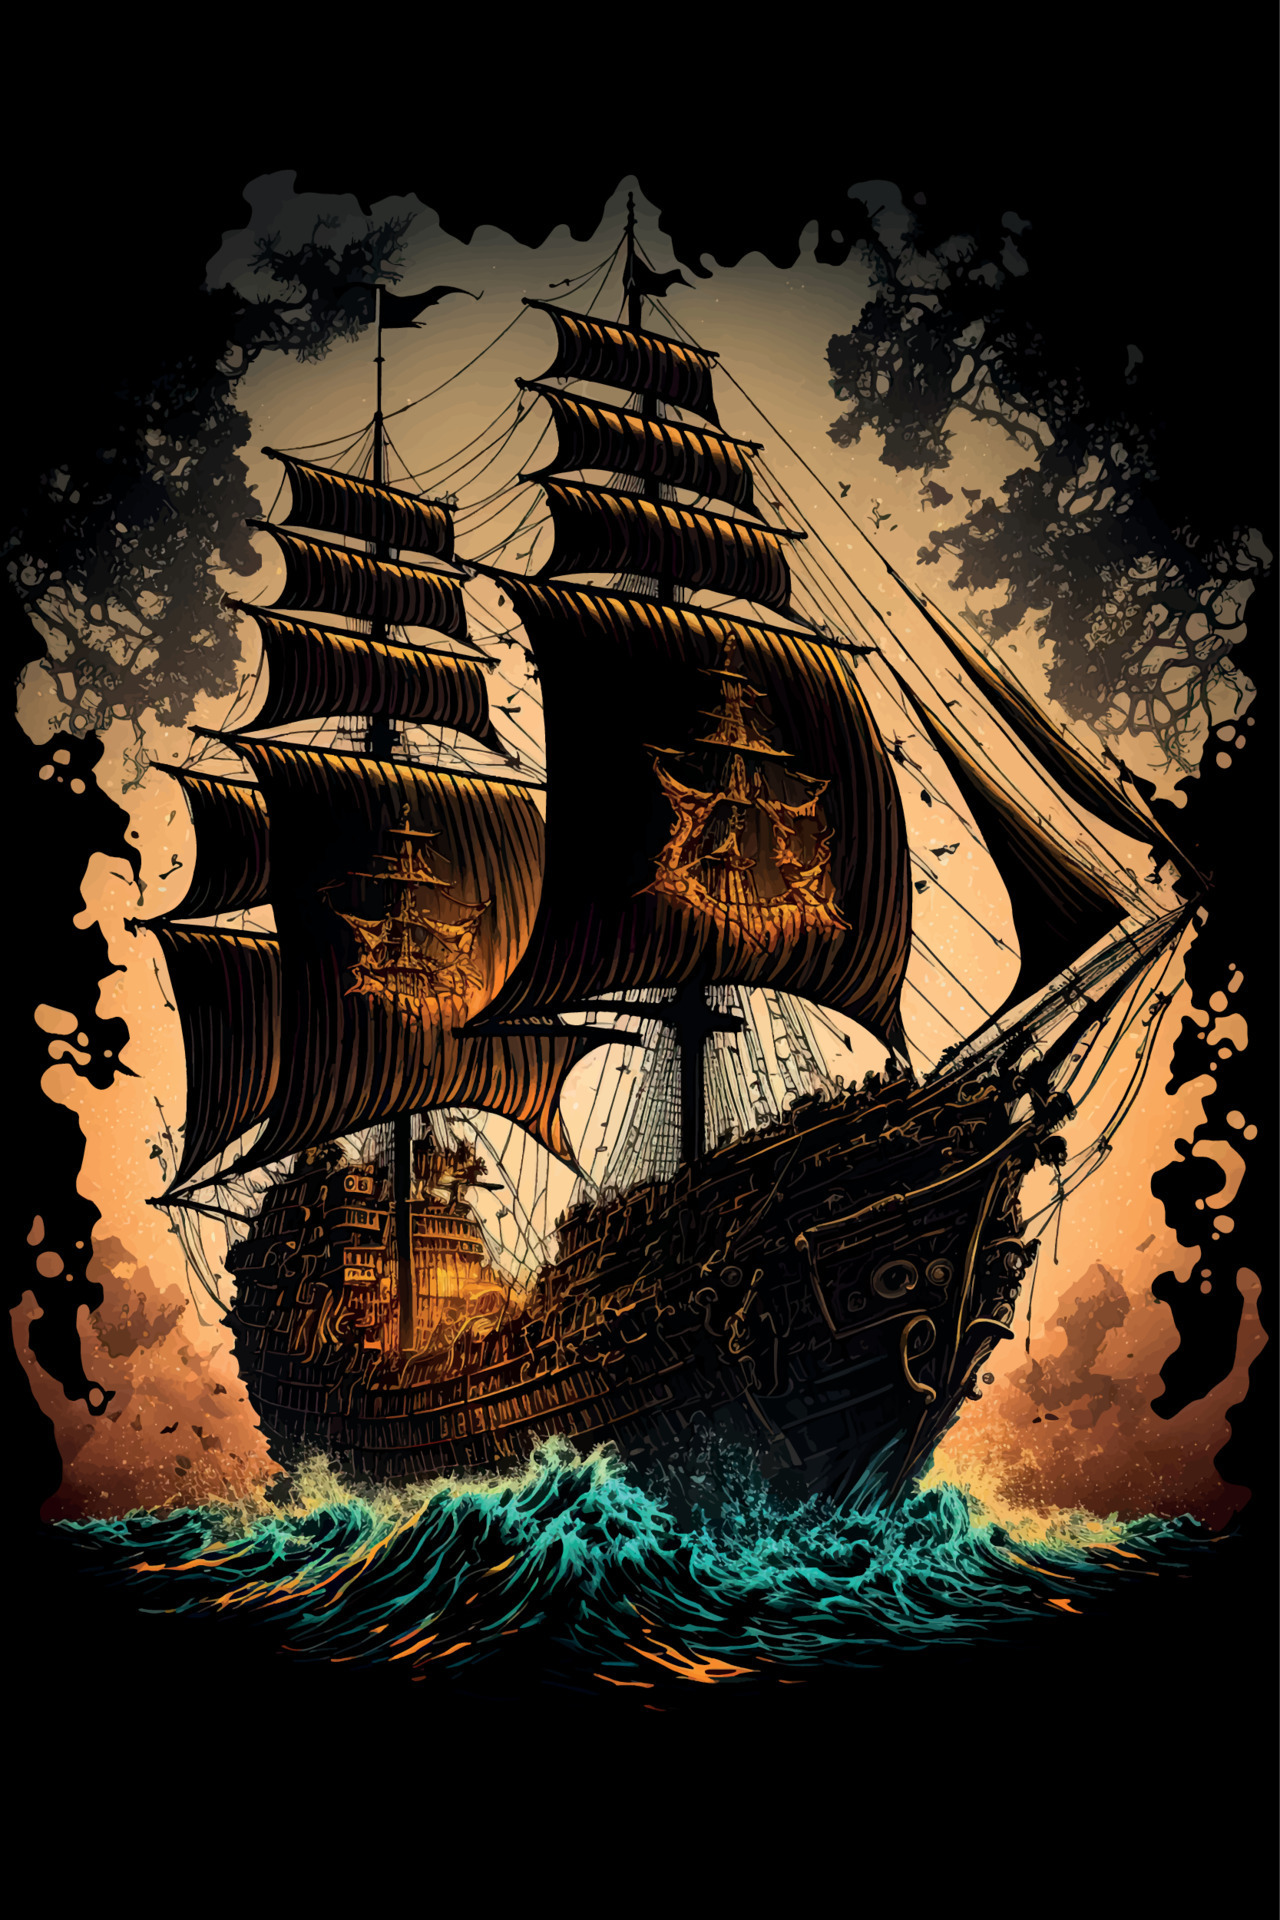 Pirate Ship Wallpaper Images - Free Download on Freepik